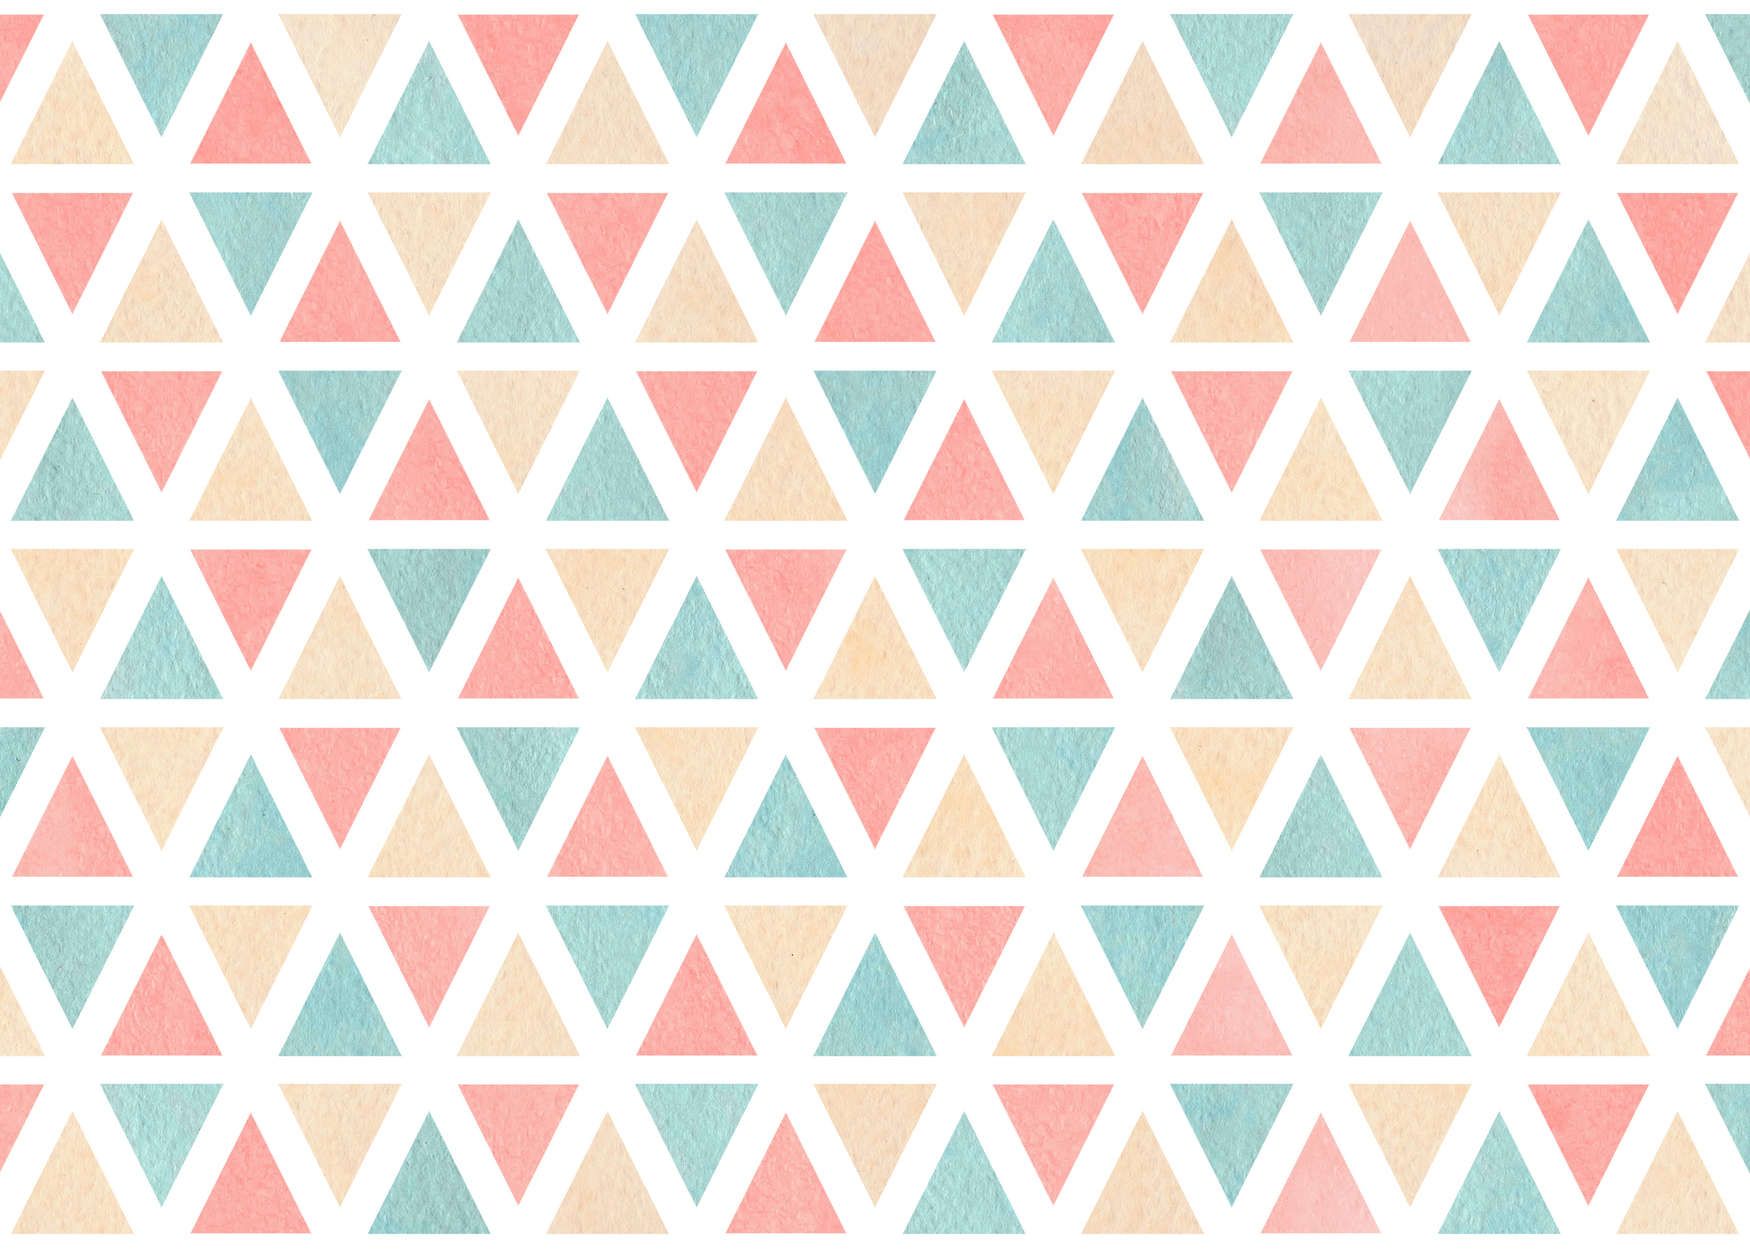             papier peint en papier graphique avec triangles colorés - intissé lisse & mat
        